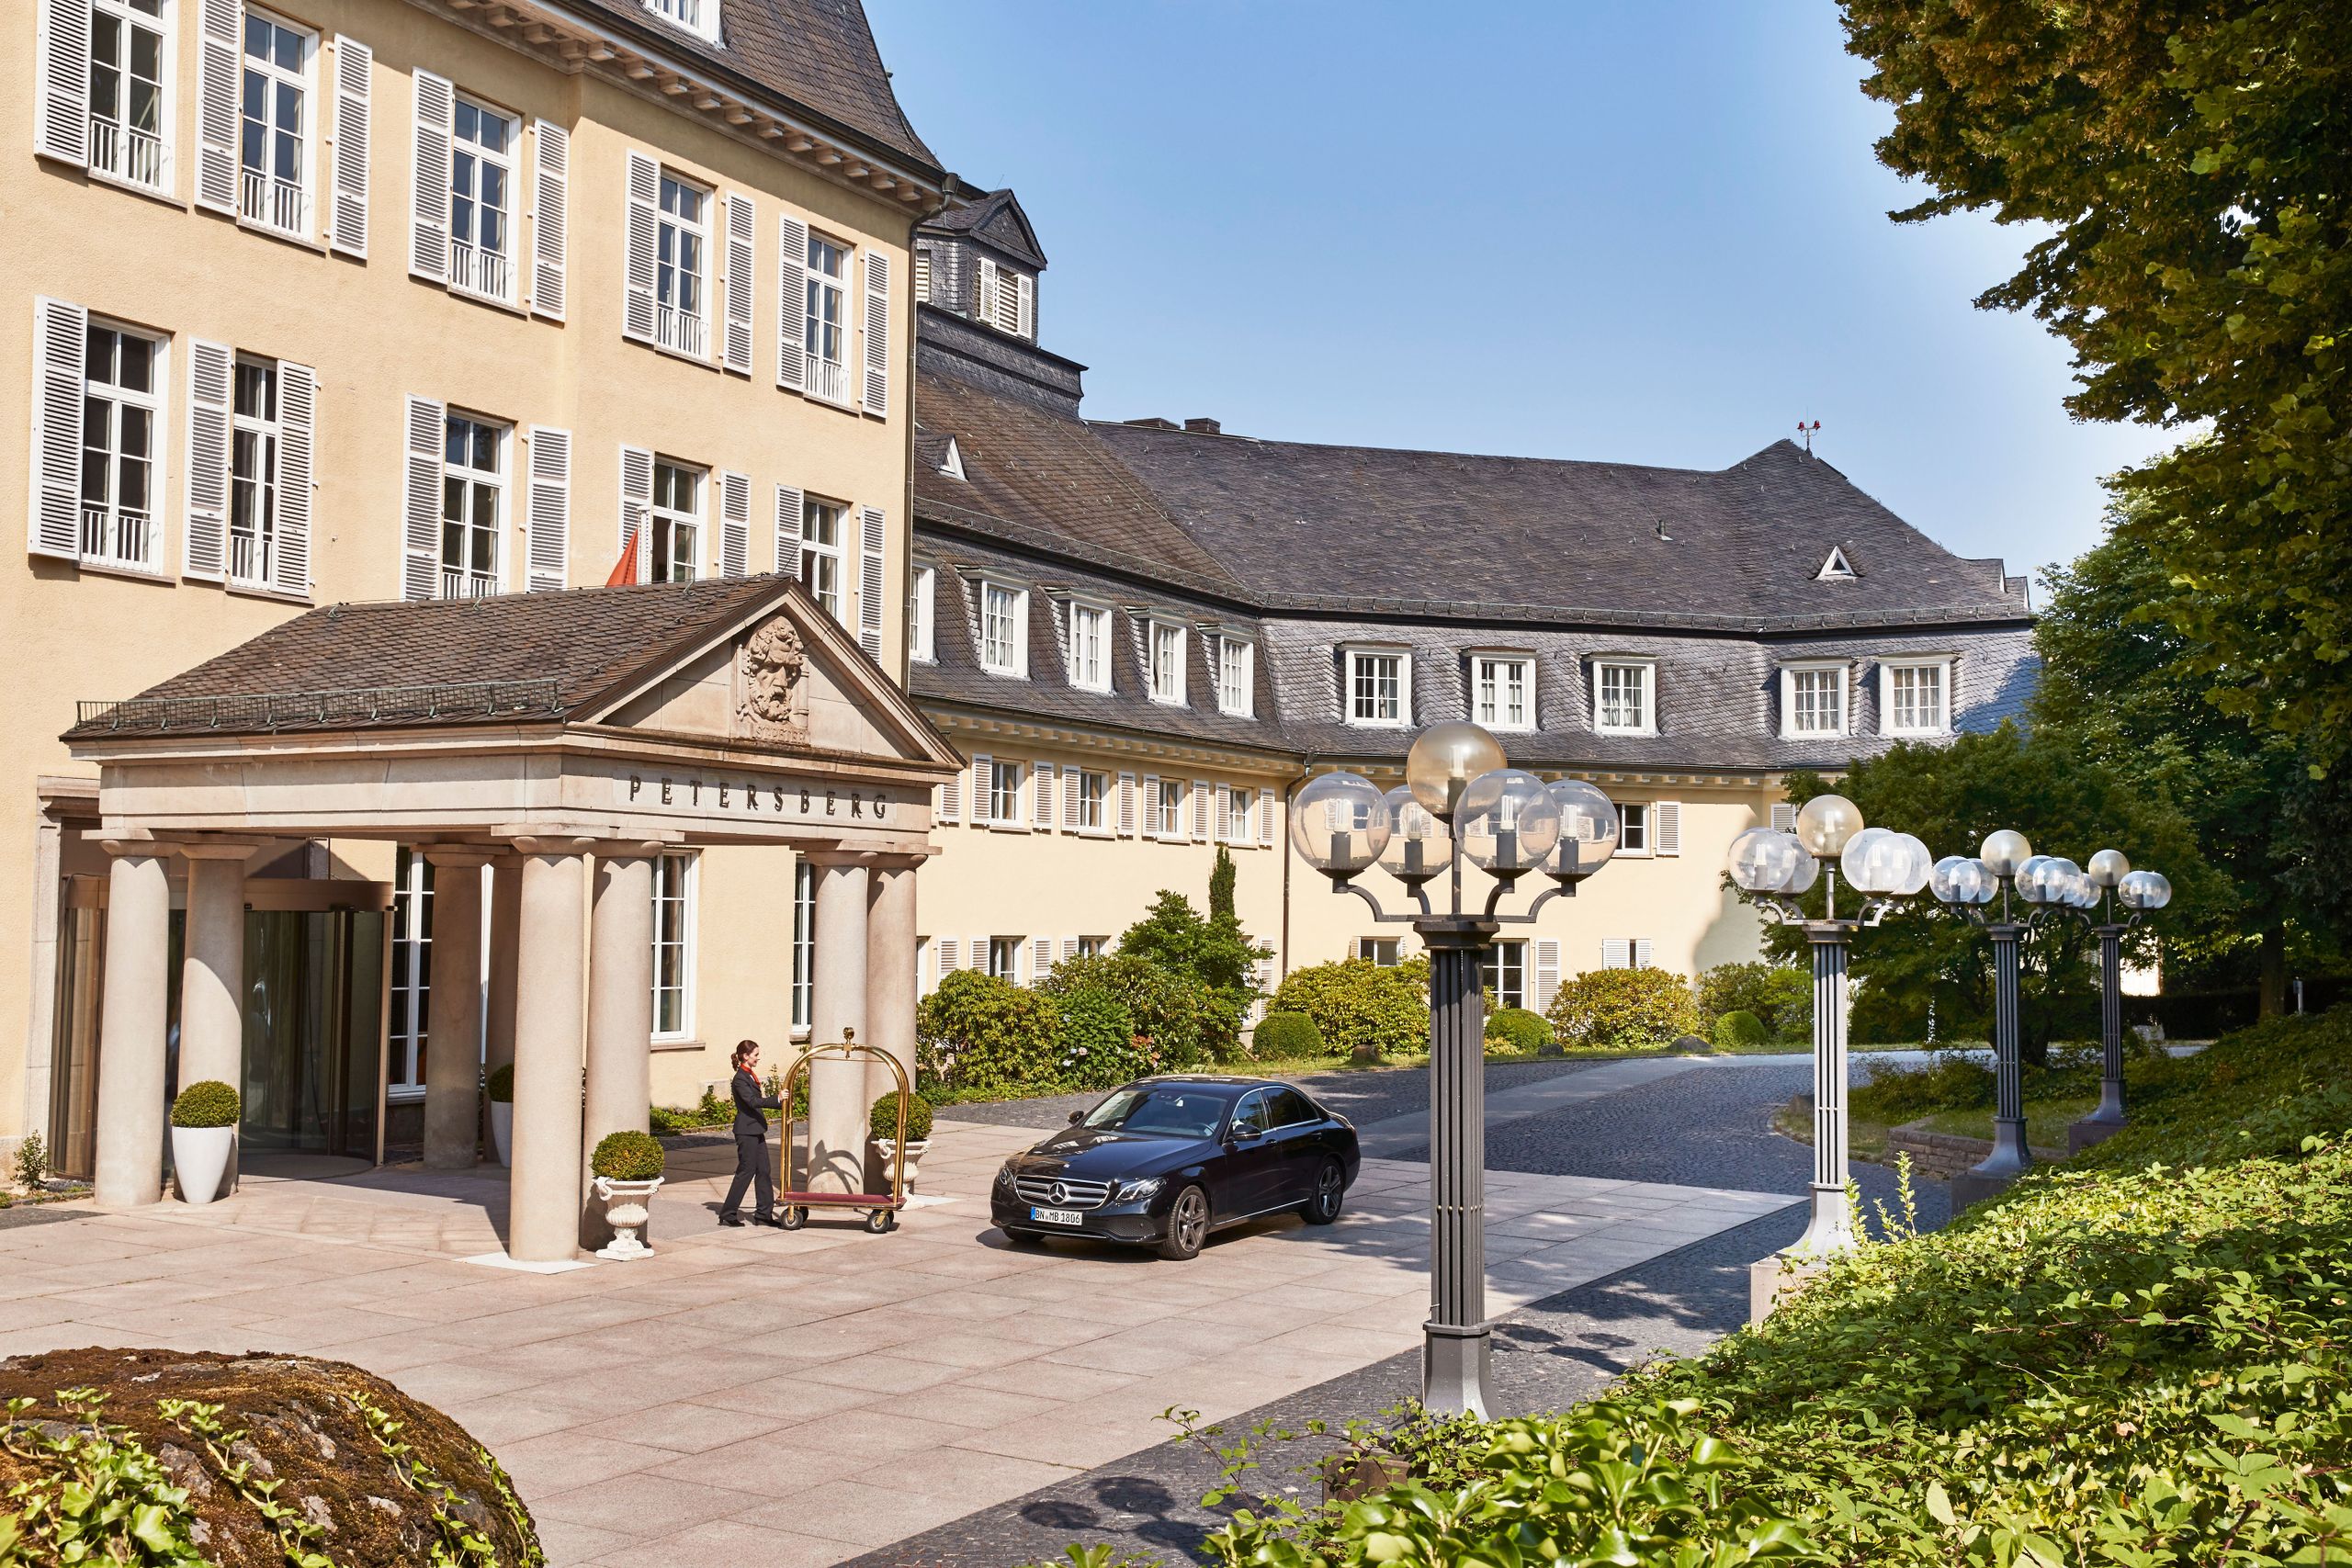 Steigenberger Grandhotel & Spa Petersberg, Königswinter/Bonn - exterior view